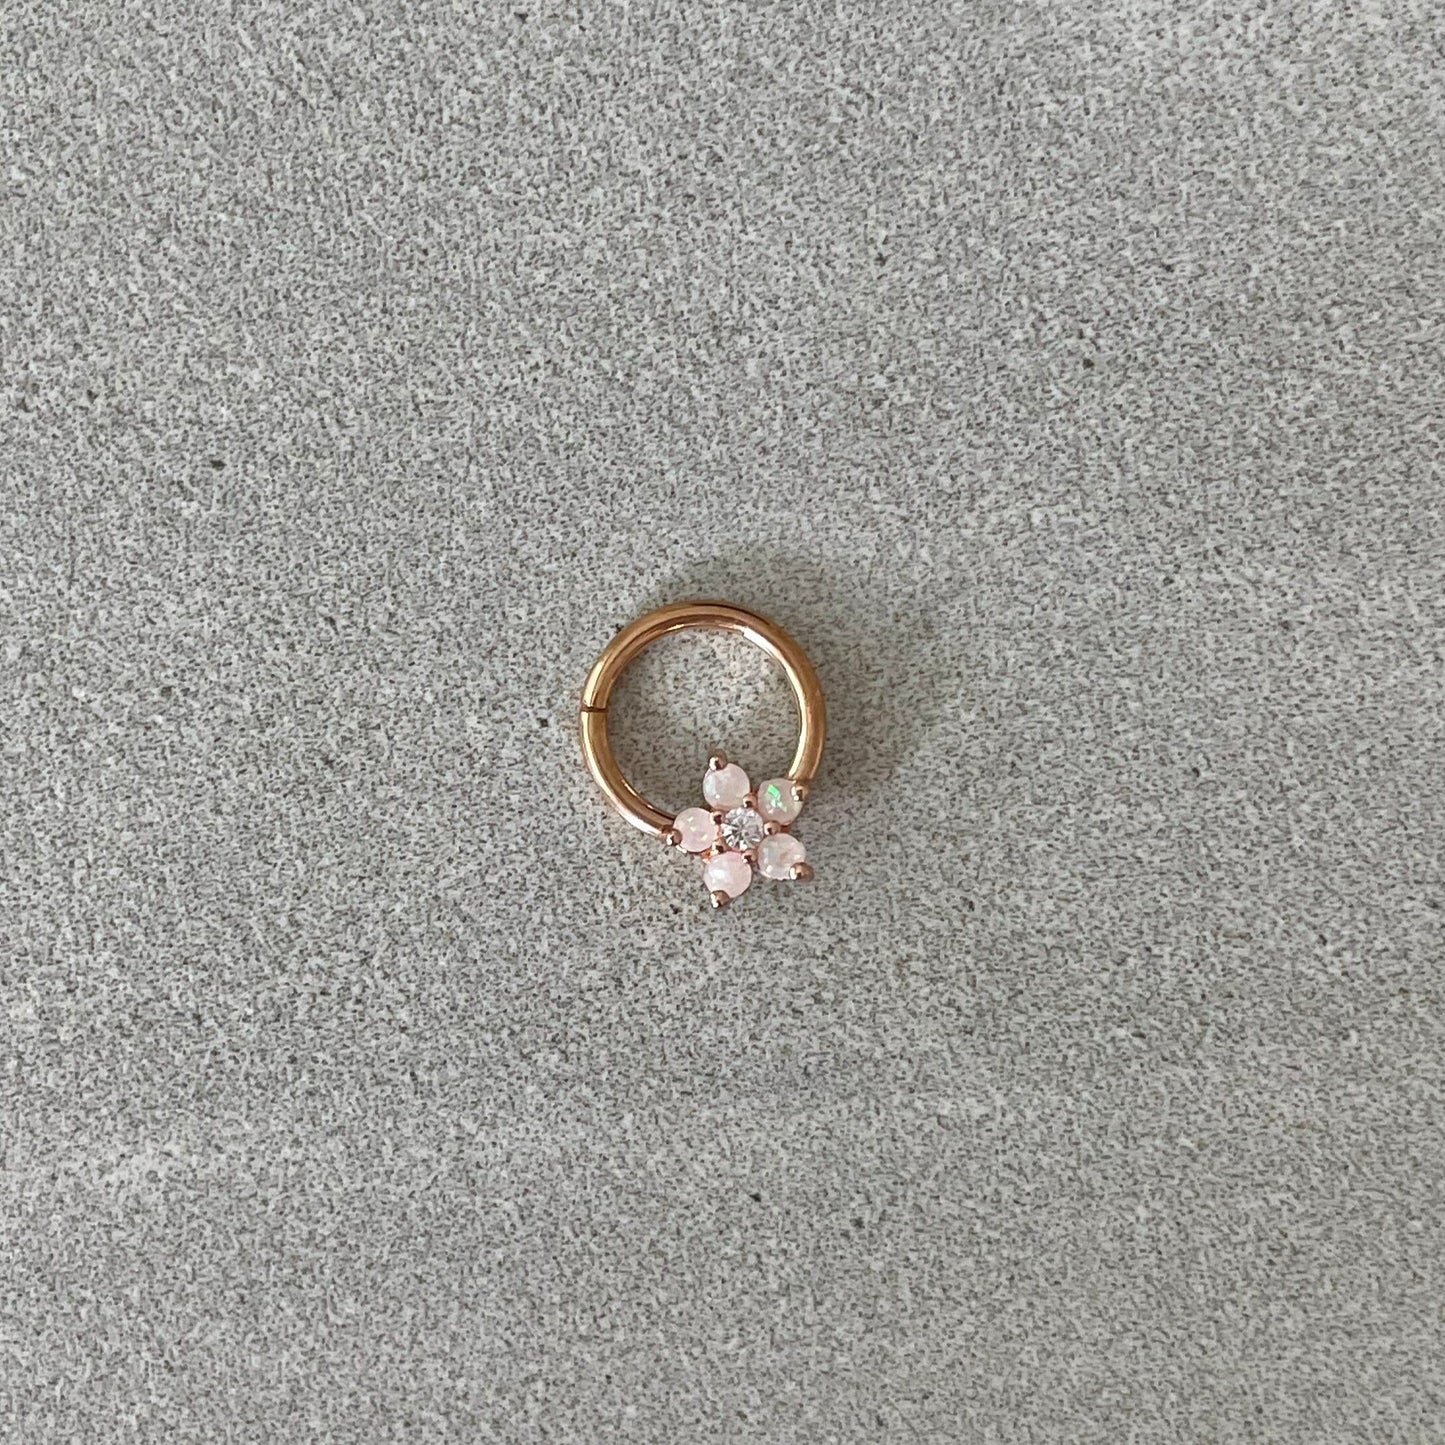 Rose Gold Opal Flower Septum Ring (16G, 8mm, Surgical Steel)Rose Gold Opal Flower Septum Ring (16G, 8mm, Surgical Steel)